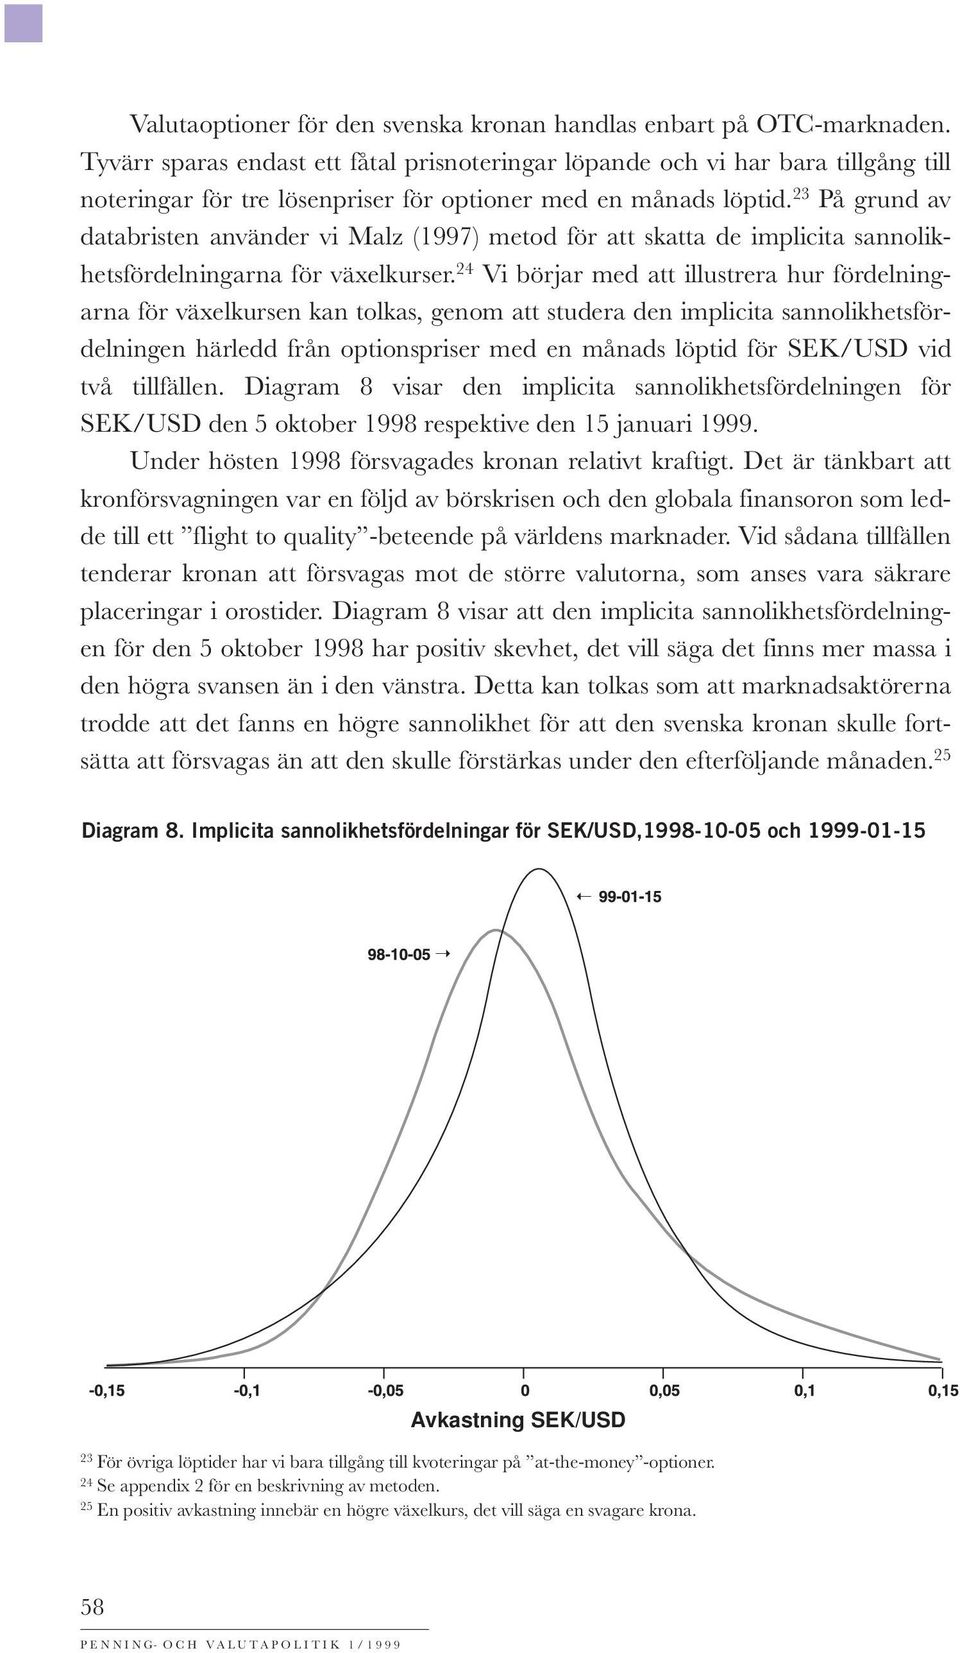 23 På grund av databristen använder vi Malz (1997) metod för att skatta de implicita sannolikhetsfördelningarna för växelkurser.